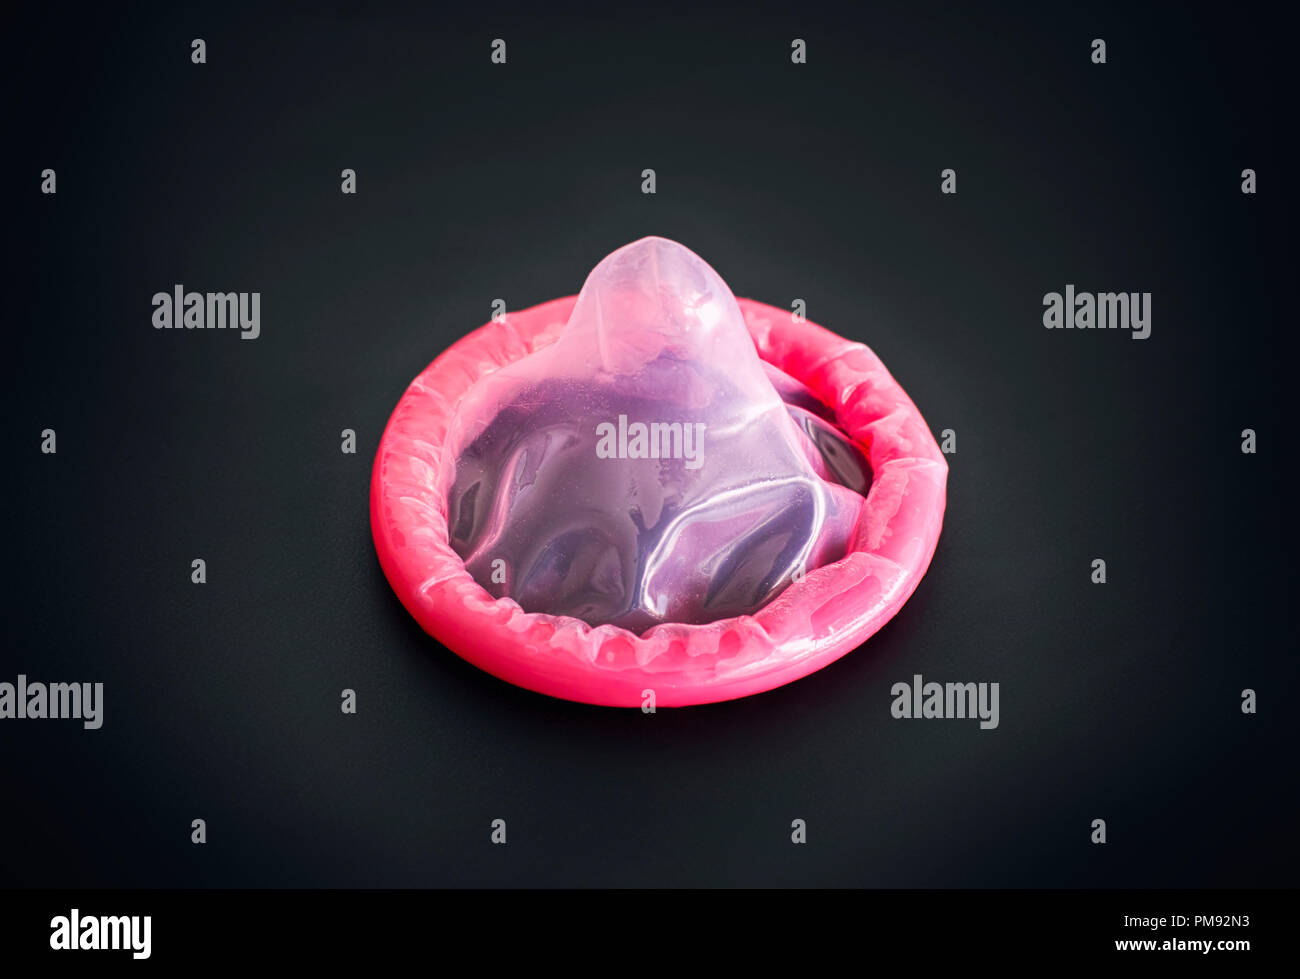 Rosa Kondom auf schwarzen Hintergrund. Close-up Stockfotografie - Alamy